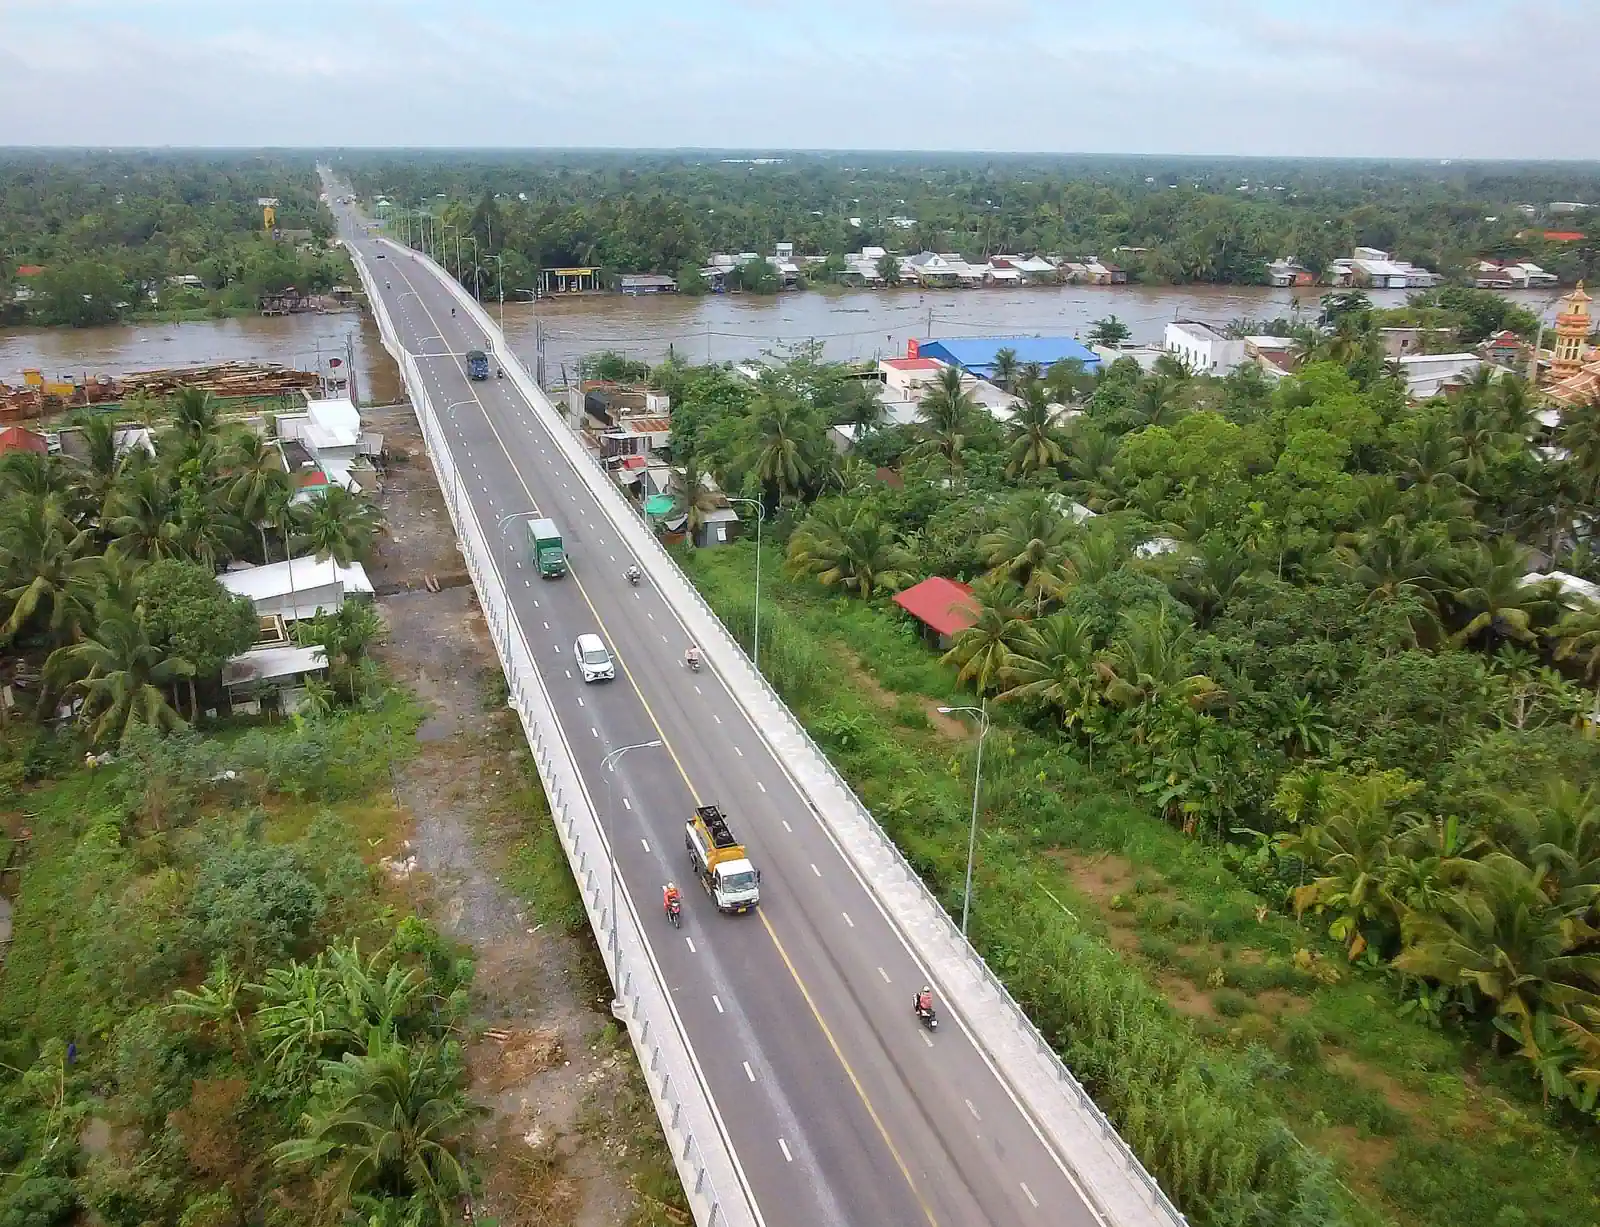 Cầu Vàm Xáng thông xe trong năm 2022. Dự án cầu Vàm Xáng và đường nối từ cầu Vàm Xáng đến quốc lộ 61C (huyện Phong Ðiền) có tổng chiều dài tuyến hơn 3,29km, tổng mức đầu tư gần 450 tỉ đồng. Cầu Vàm Xáng bắc qua sông Cần Thơ, đang phục vụ nhu cầu đi lại của người dân, thúc đẩy phát triển kinh tế - xã hội của huyện Phong Điền và TP Cần Thơ.